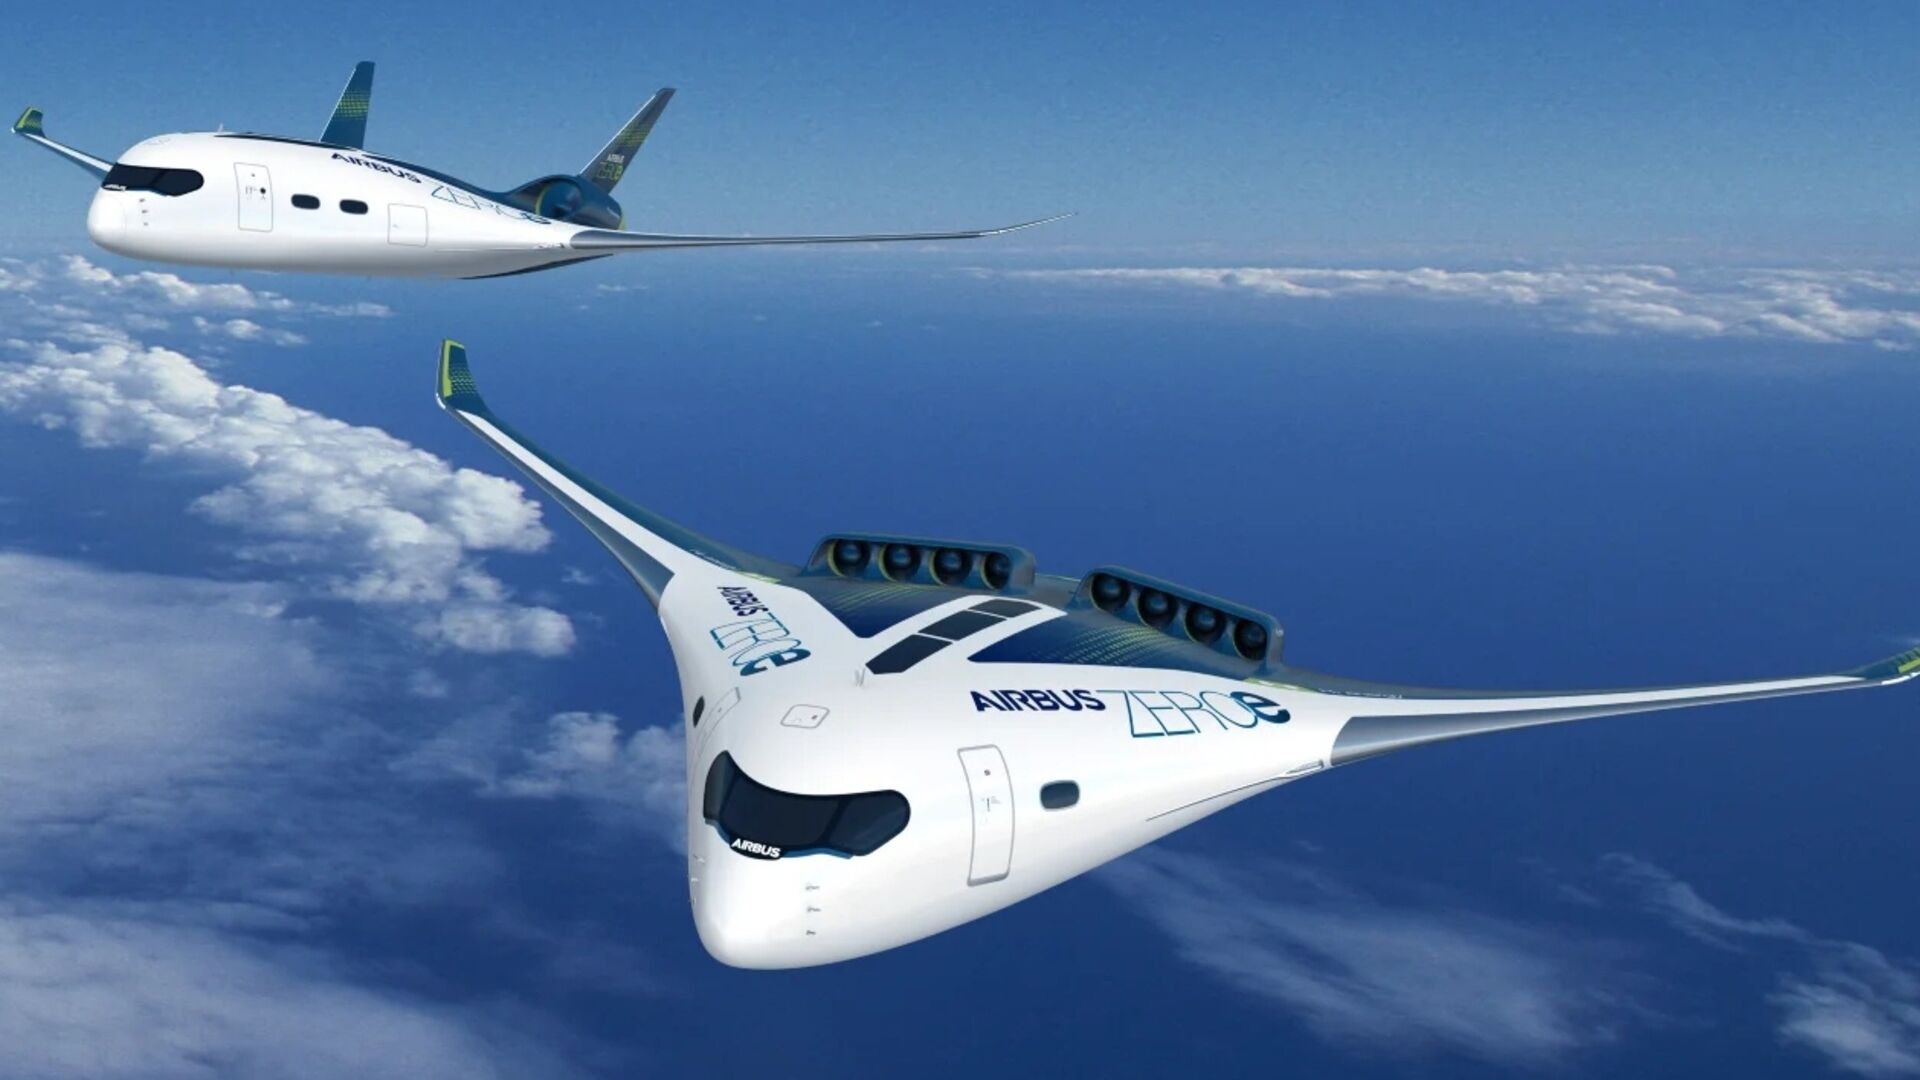 Бучава: проектот ZERO на компанијата Ербас е еден од авионите со мешани крила предложени во последниве години и предмет на студија